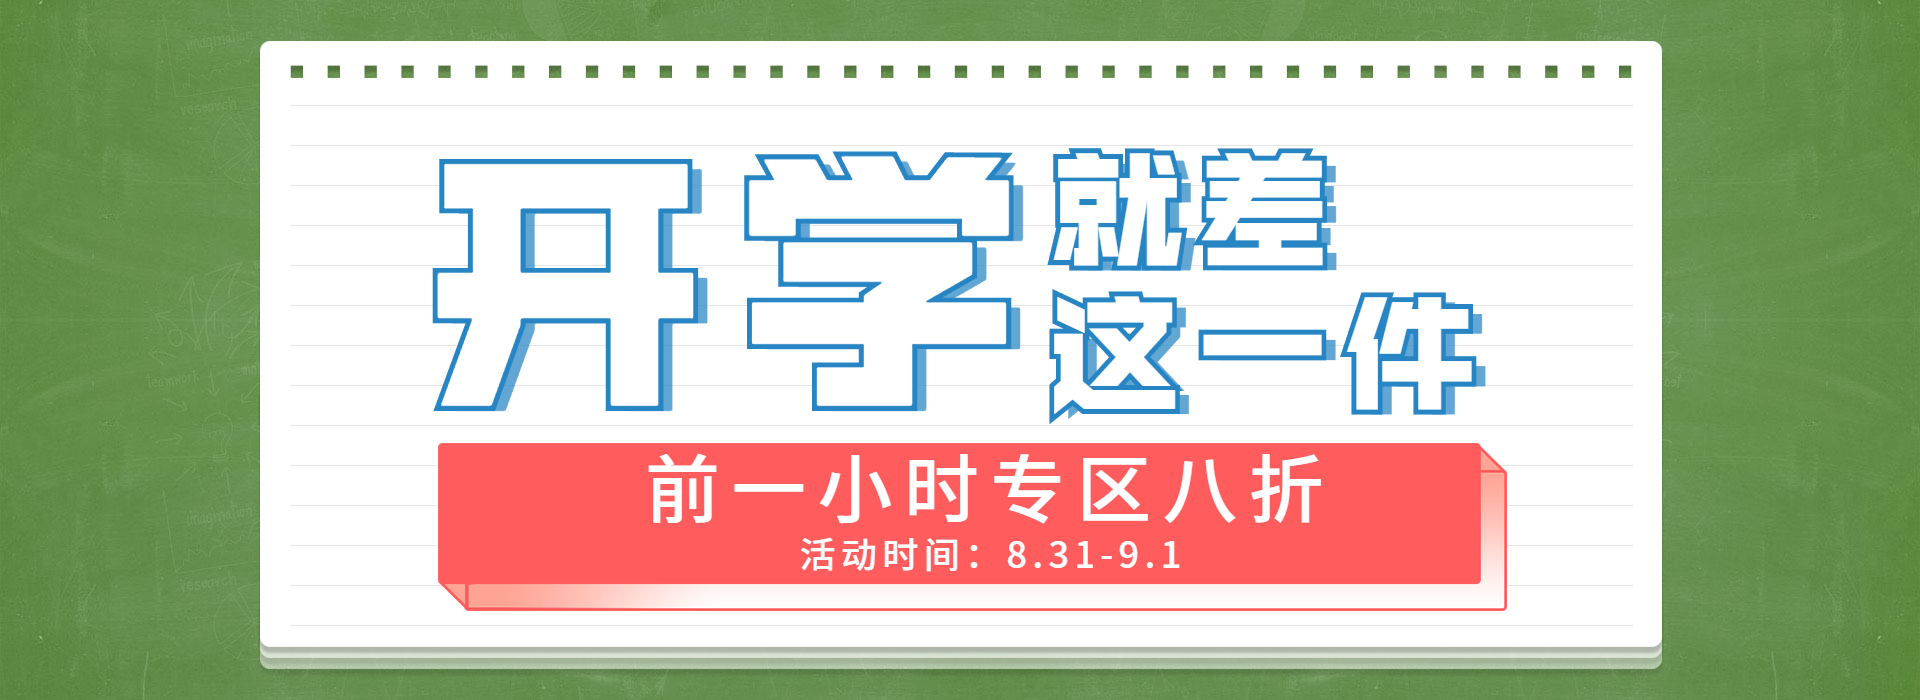 开学季/限时折扣/创意海报banner